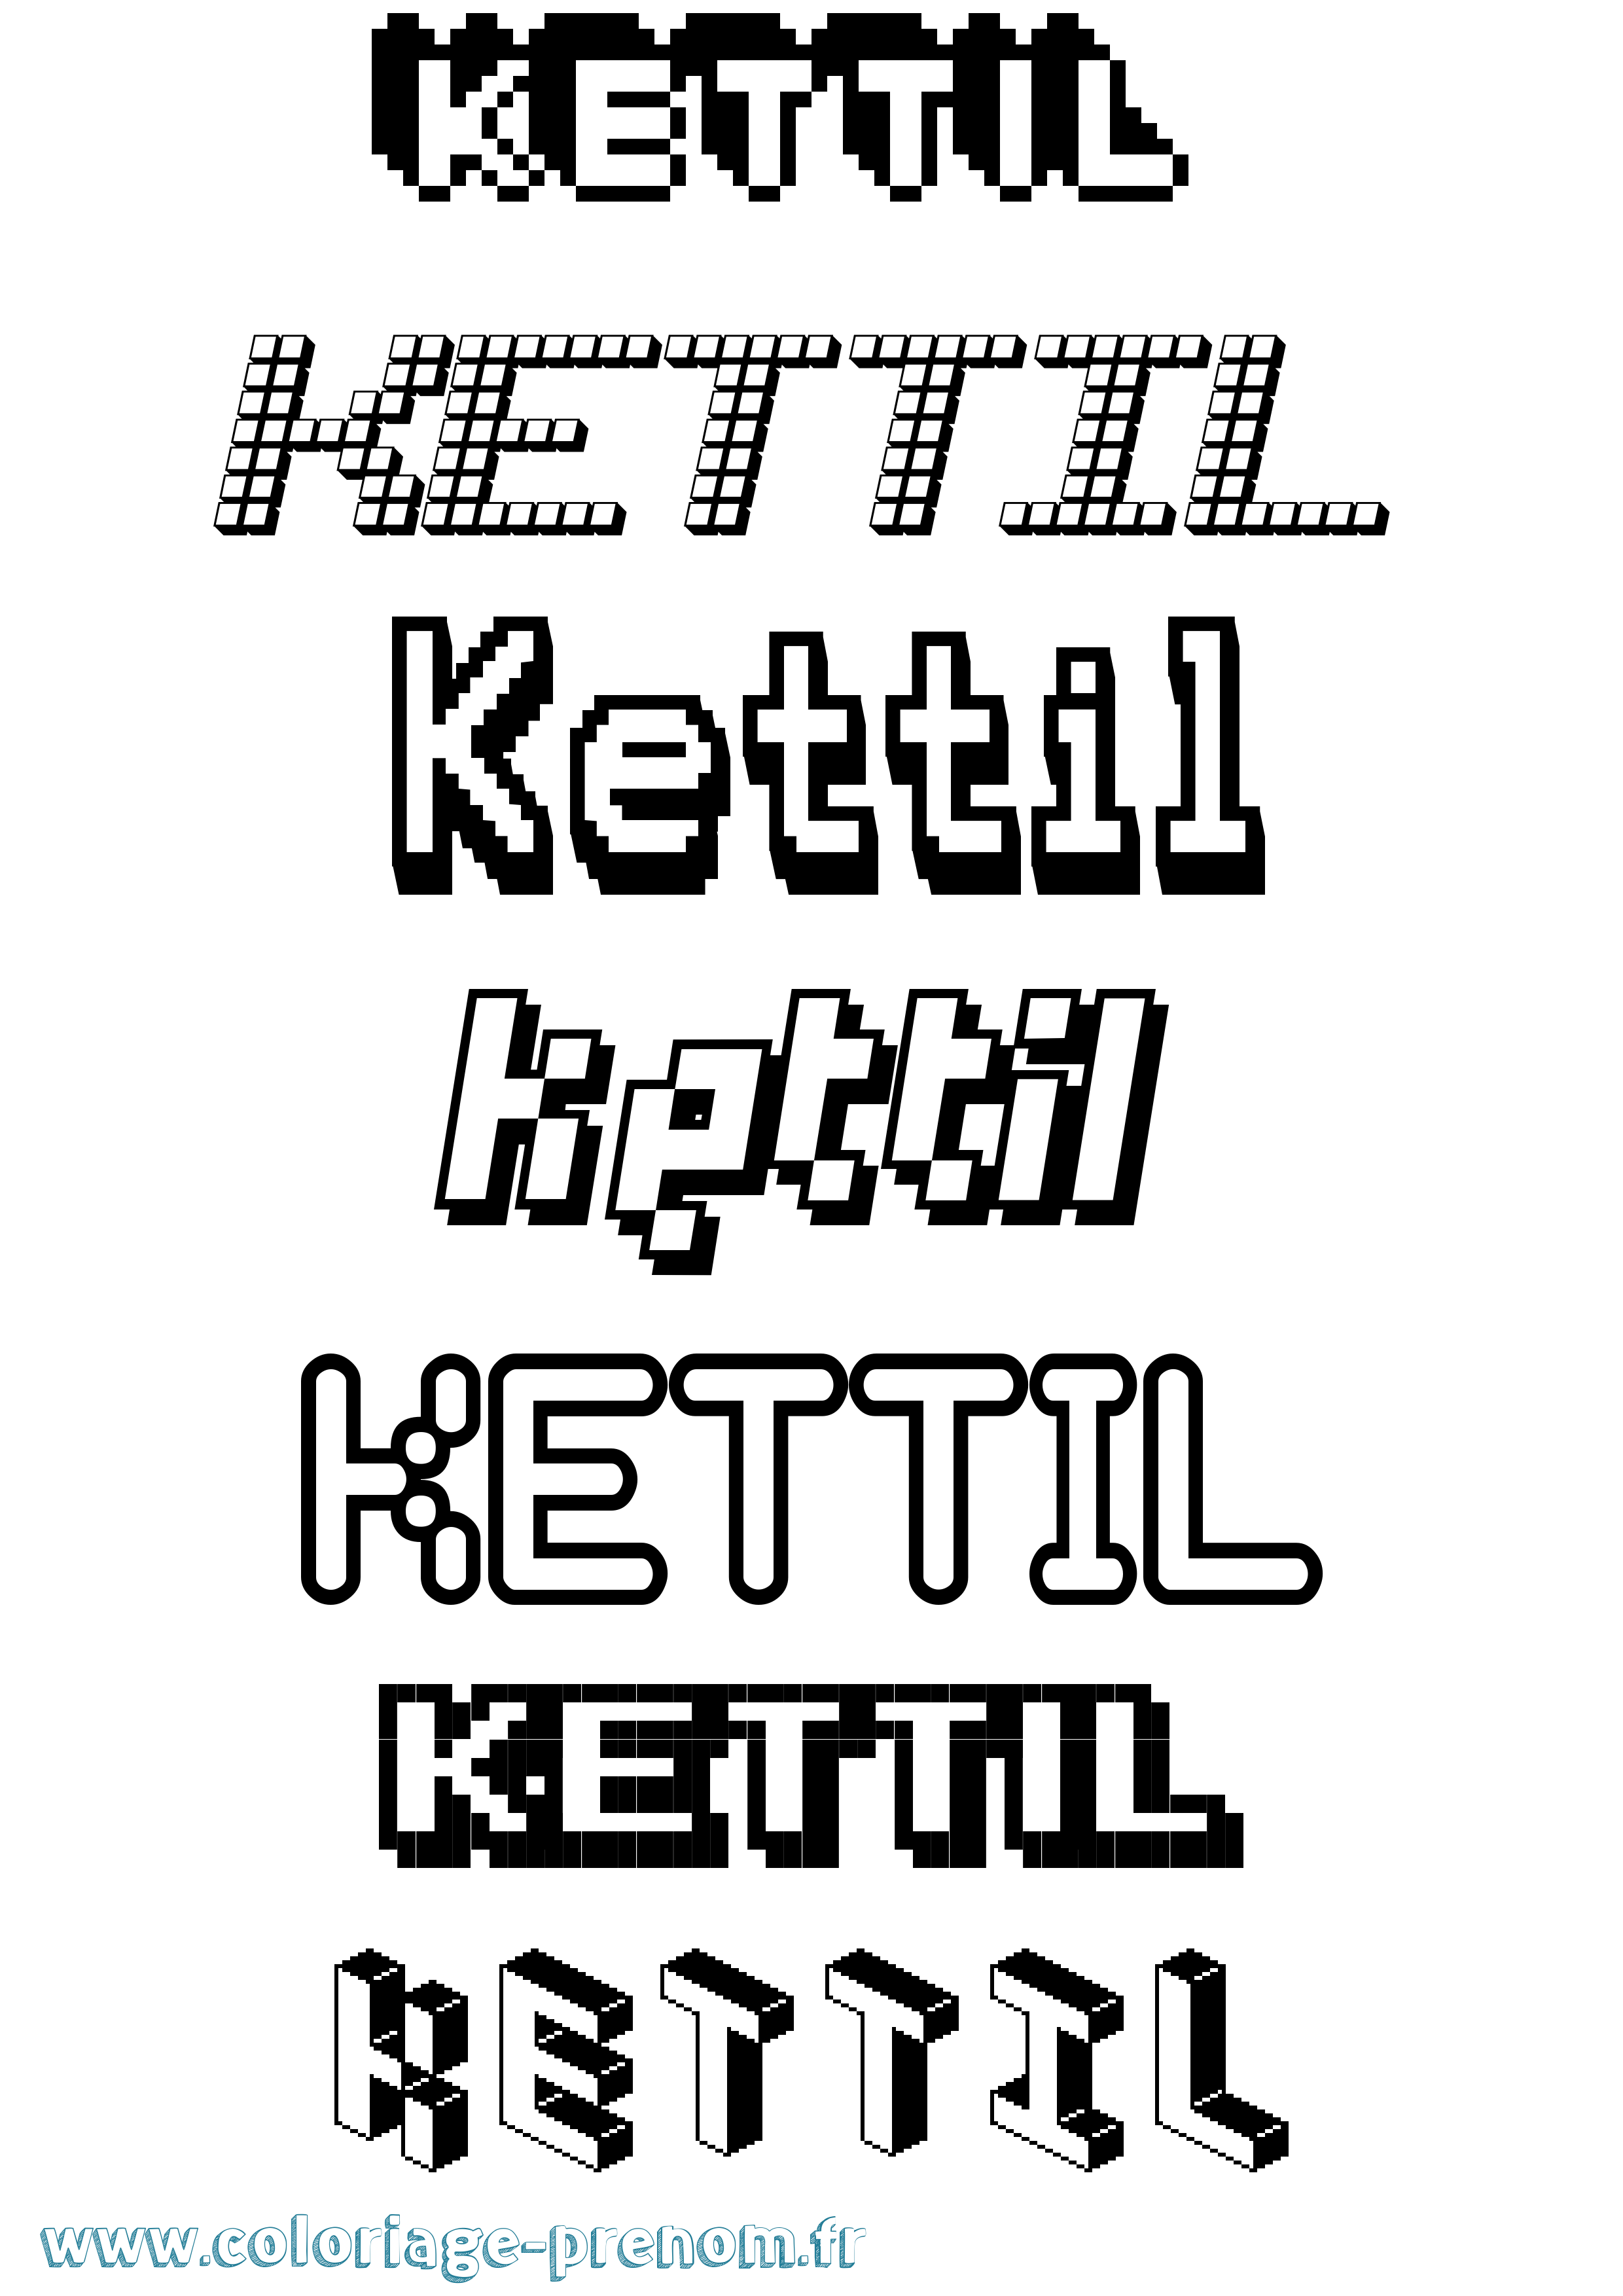 Coloriage prénom Kettil Pixel